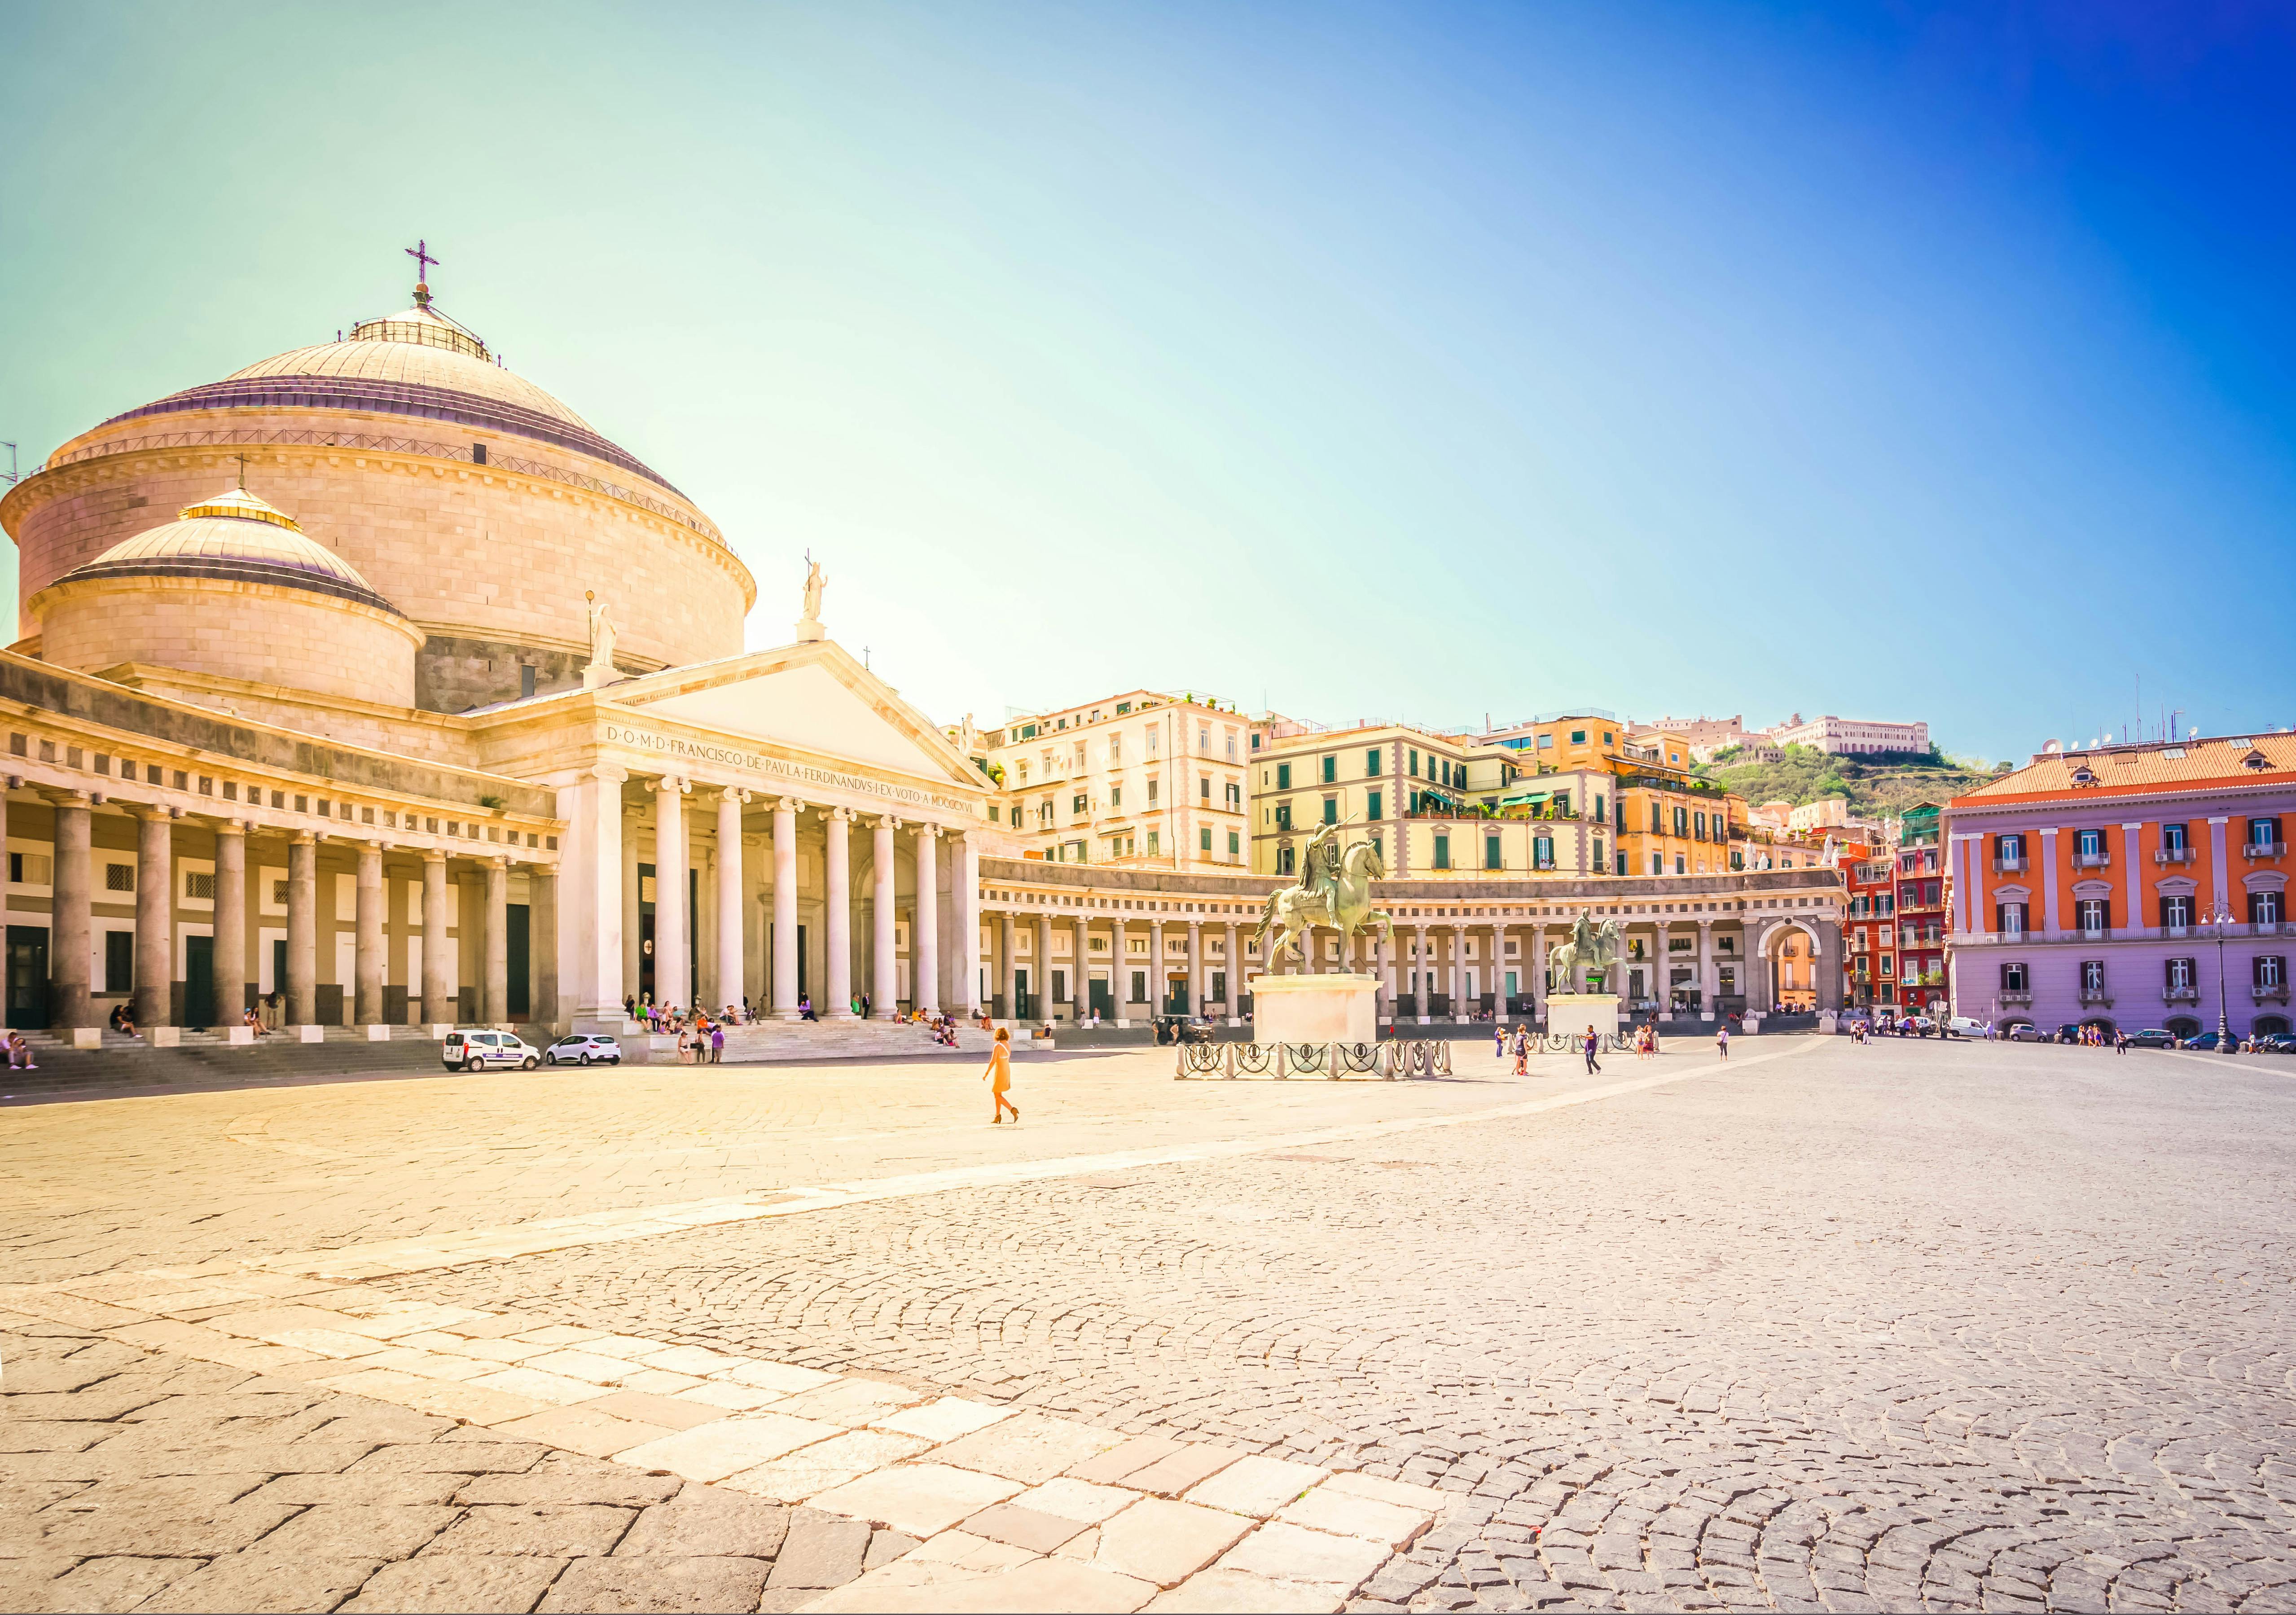 Visita a la ciudad de Nápoles desde Roma en tren de alta velocidad